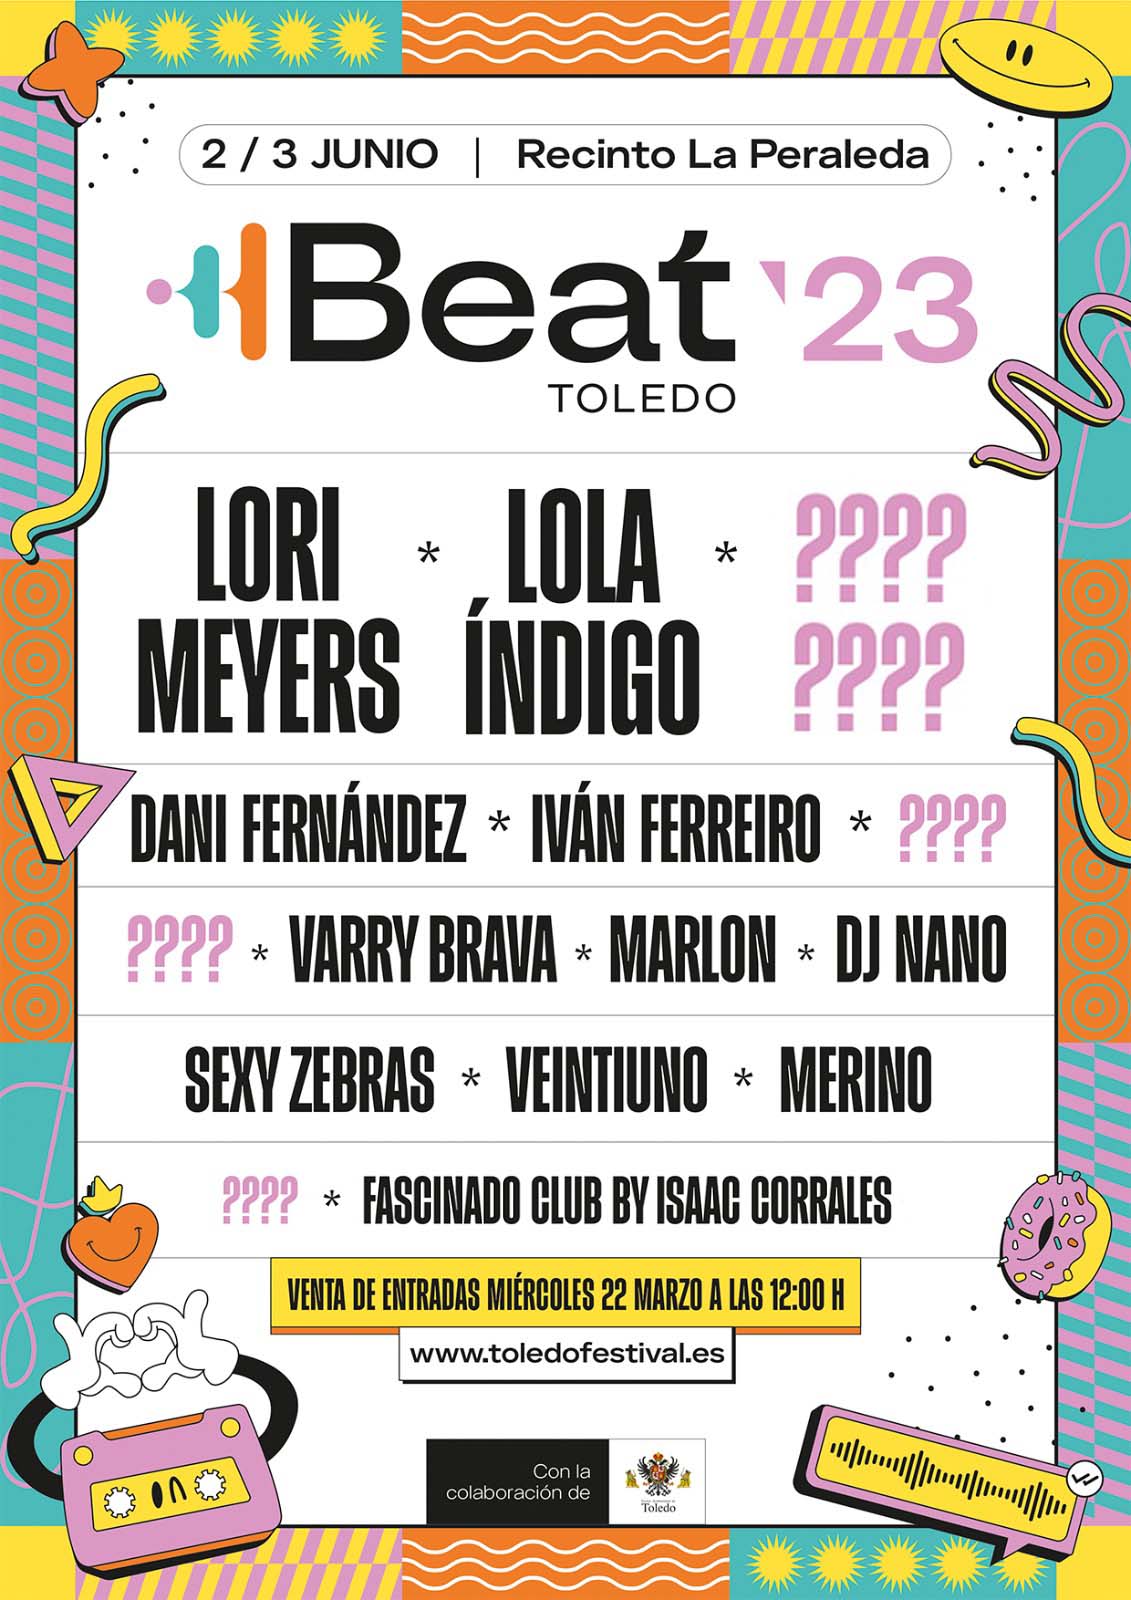 Toledo Beat Festival. Lola Índigo, Lori Meyers, Dani Fernández, Iván Ferreiro, Varry Brava...